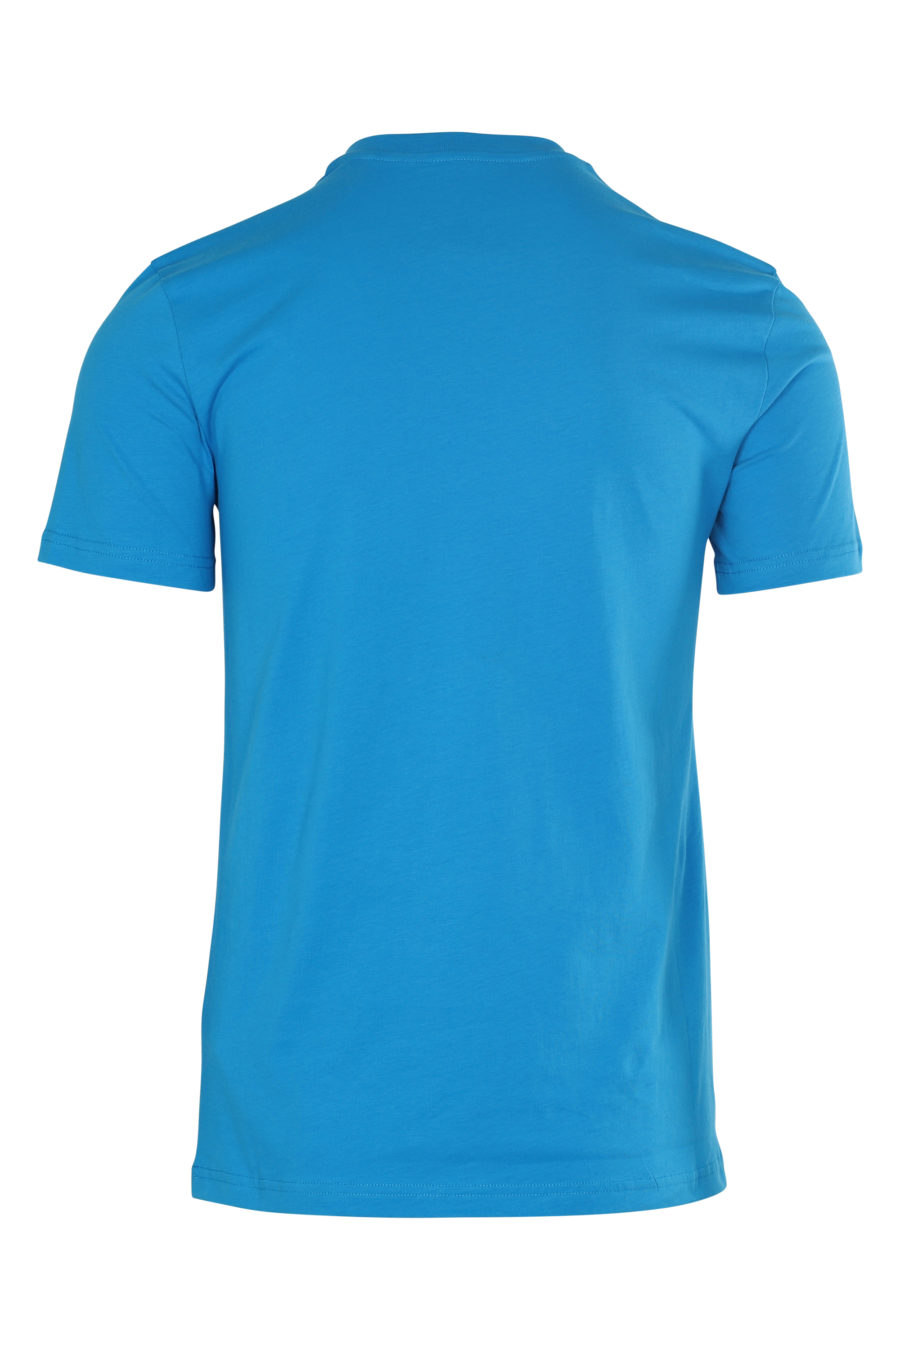 Camiseta azul con logo grande - IMG 6120